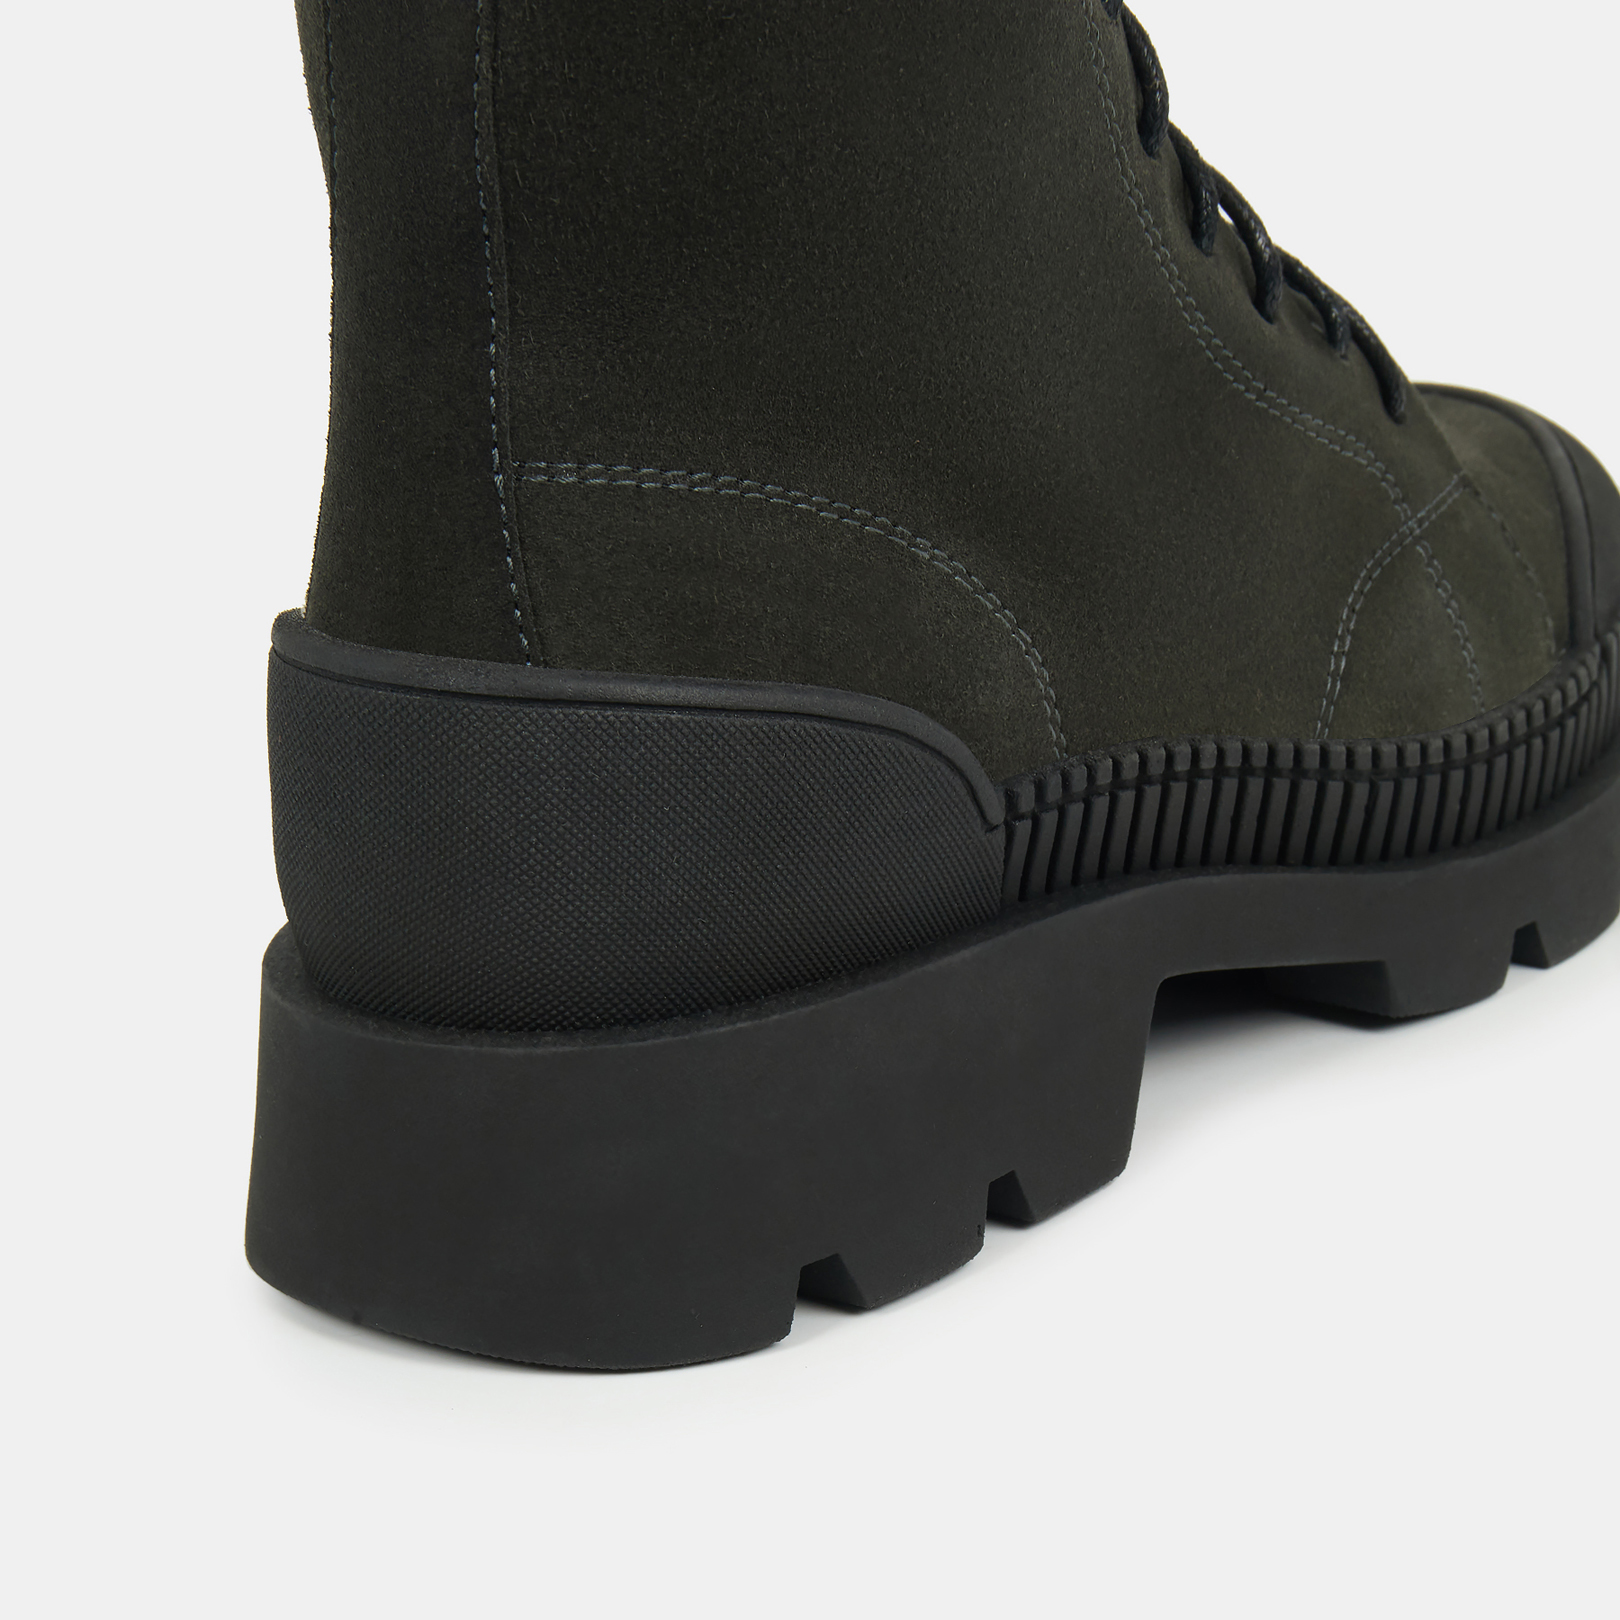 Высокие ботинки женские BECKA (цвет темно-зеленый, спилок) — купить по цене13760 р. в интернет-магазине RALF RINGER